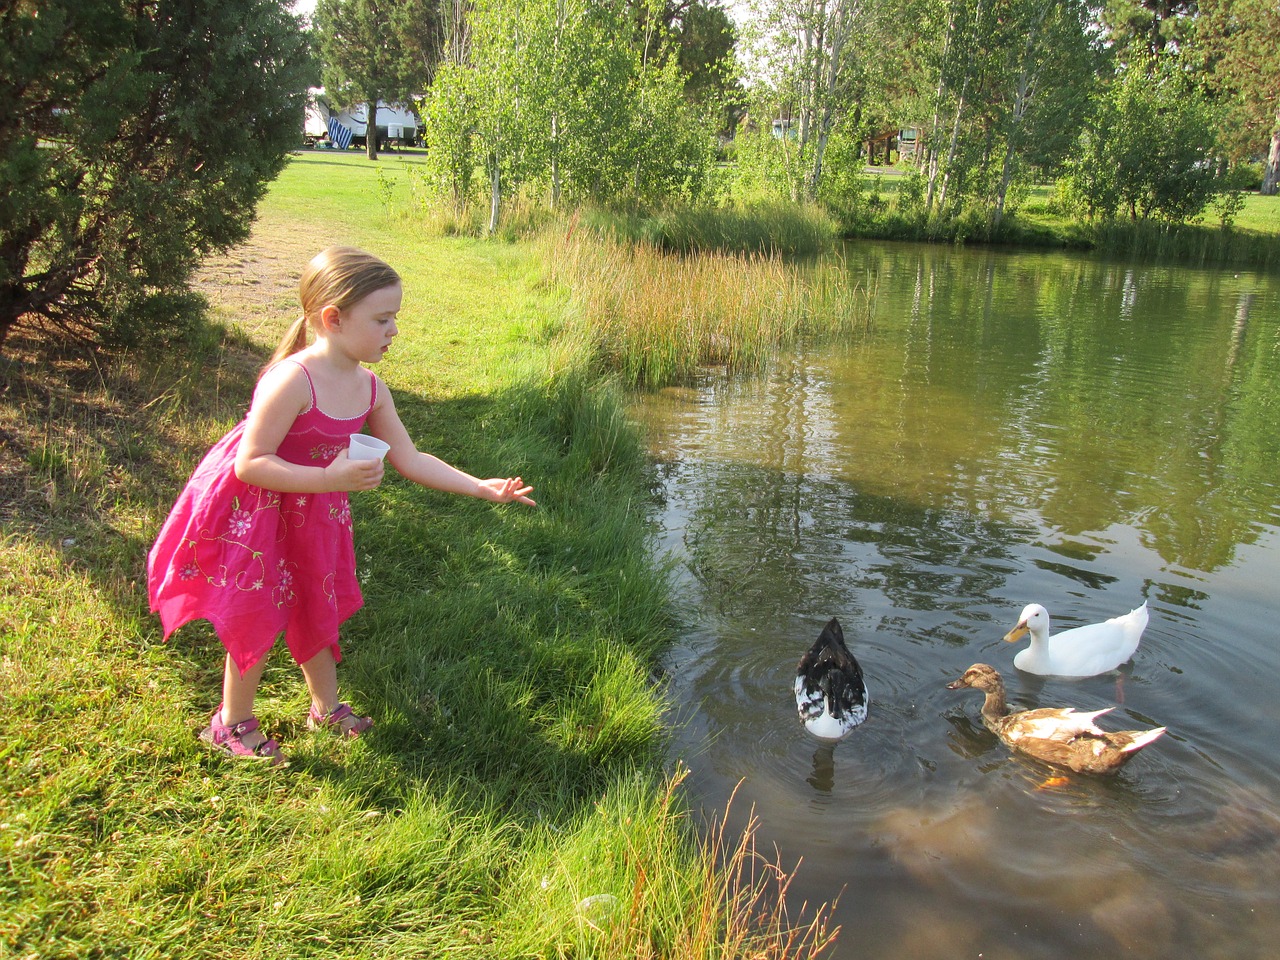 Duck-Child-Nature-Pond-Girl-Feeding-Ducks-Girl-2416858.jpg